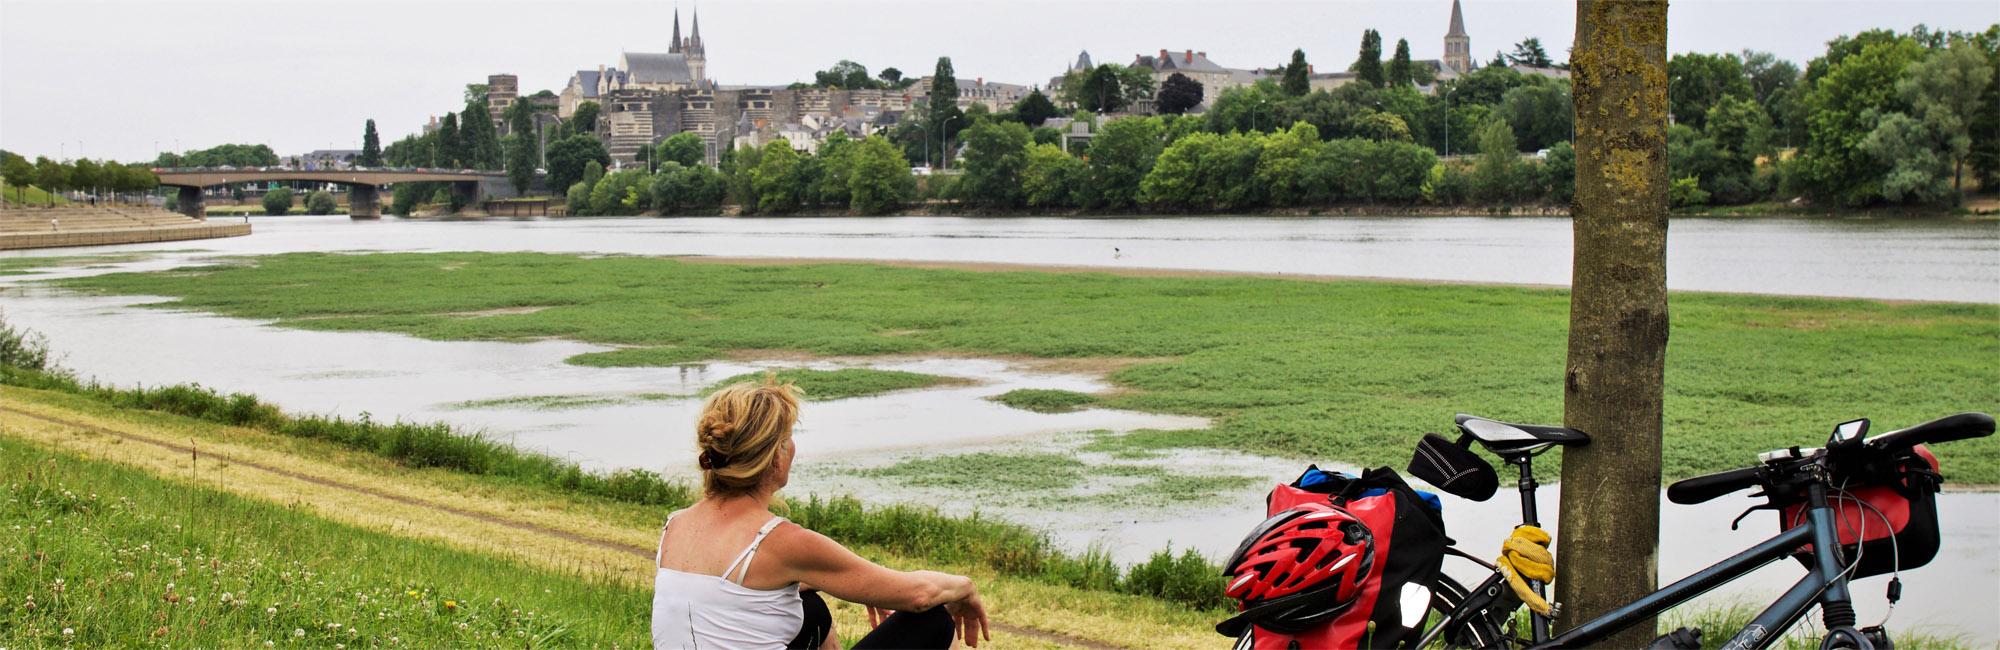 Loire Valley on bike